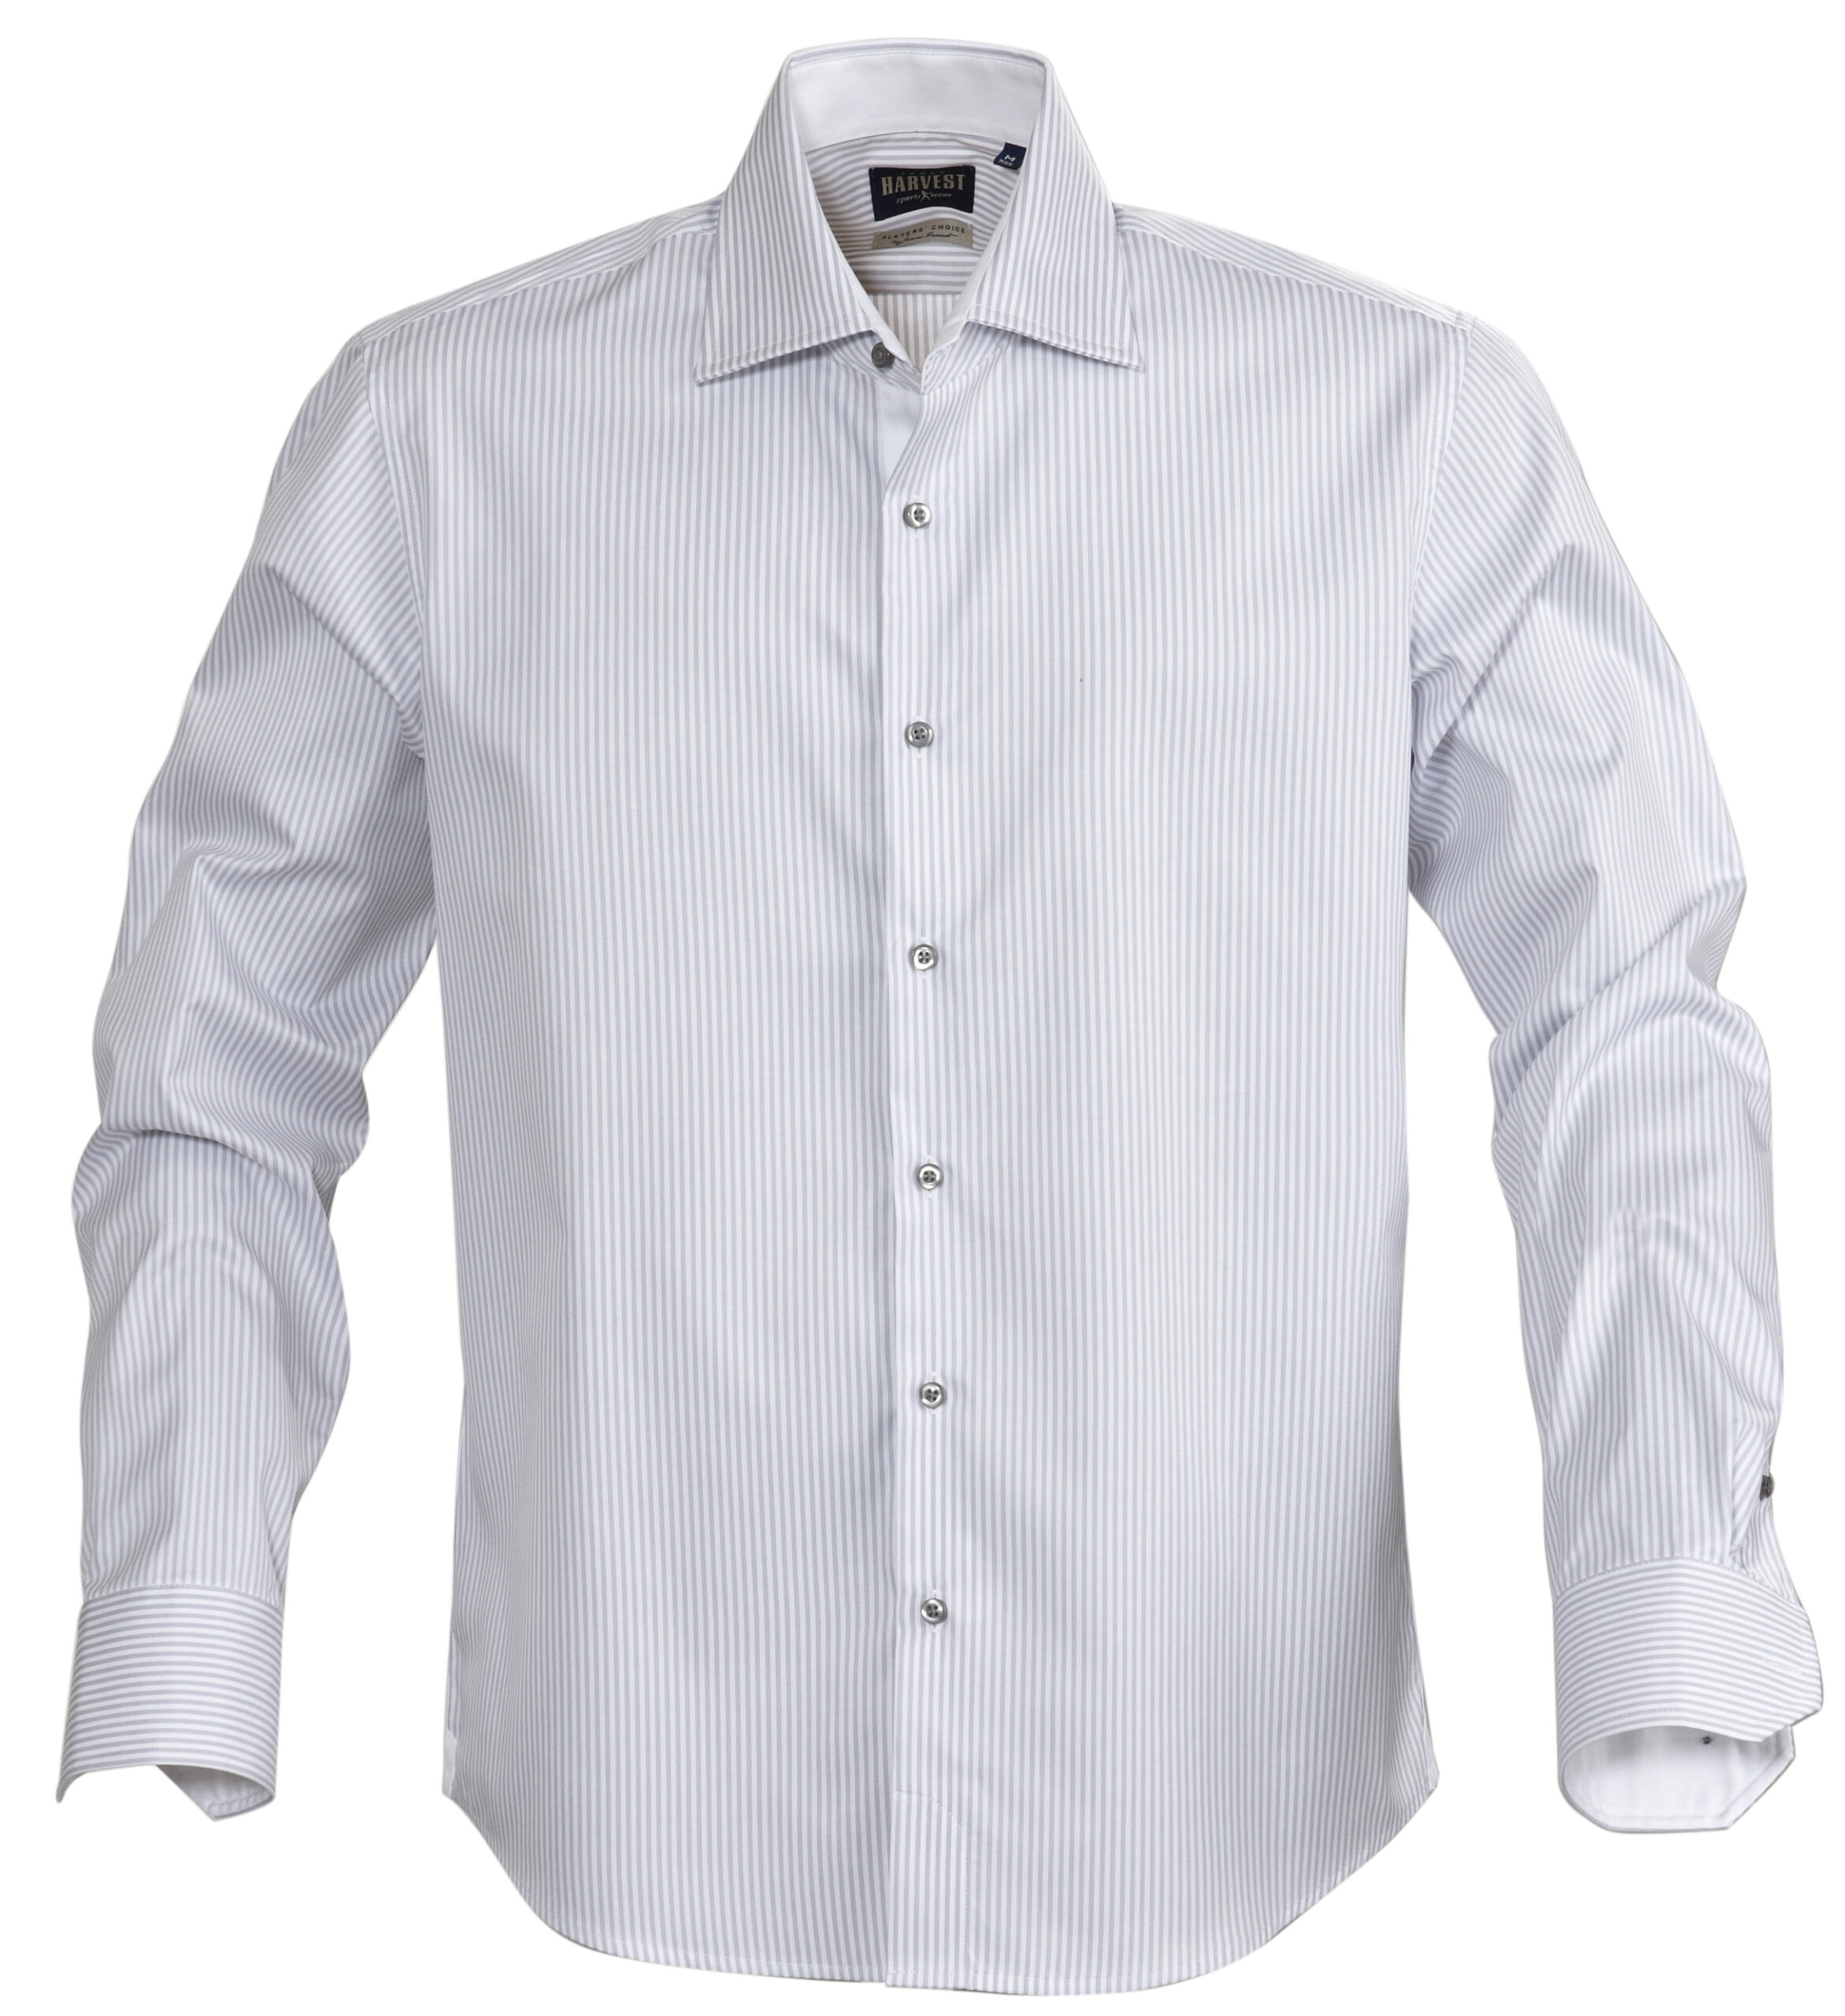 Рубашки мужские купить недорого москва. James Harvest рубашка. Рубашка мужская el-Risto. Мужская белая рубашка. Мужчина в рубашке.